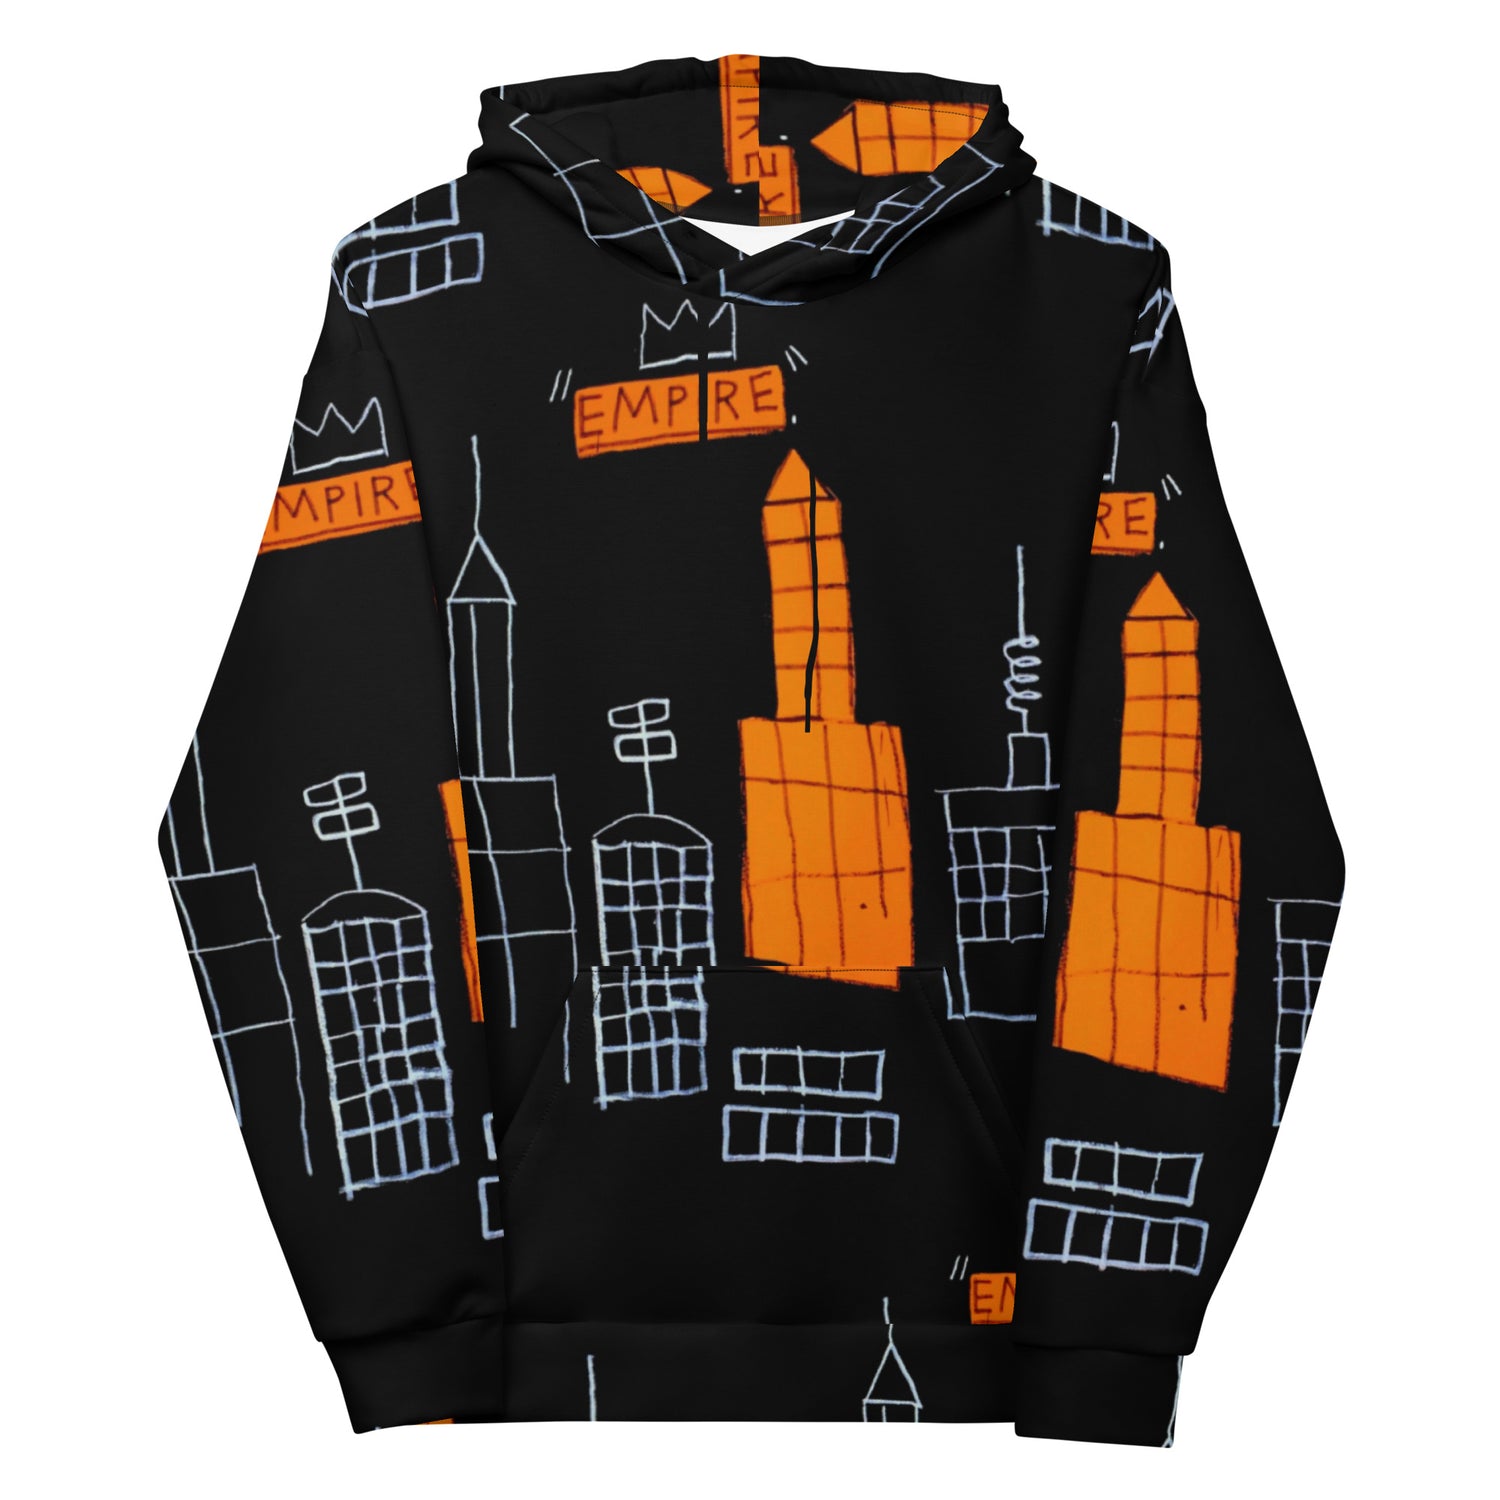 Jean-Michel Basquiat "Mecca" Artwork Printed Premium Streetwear Sweatshirt Hoodie Graffiti Harajuku